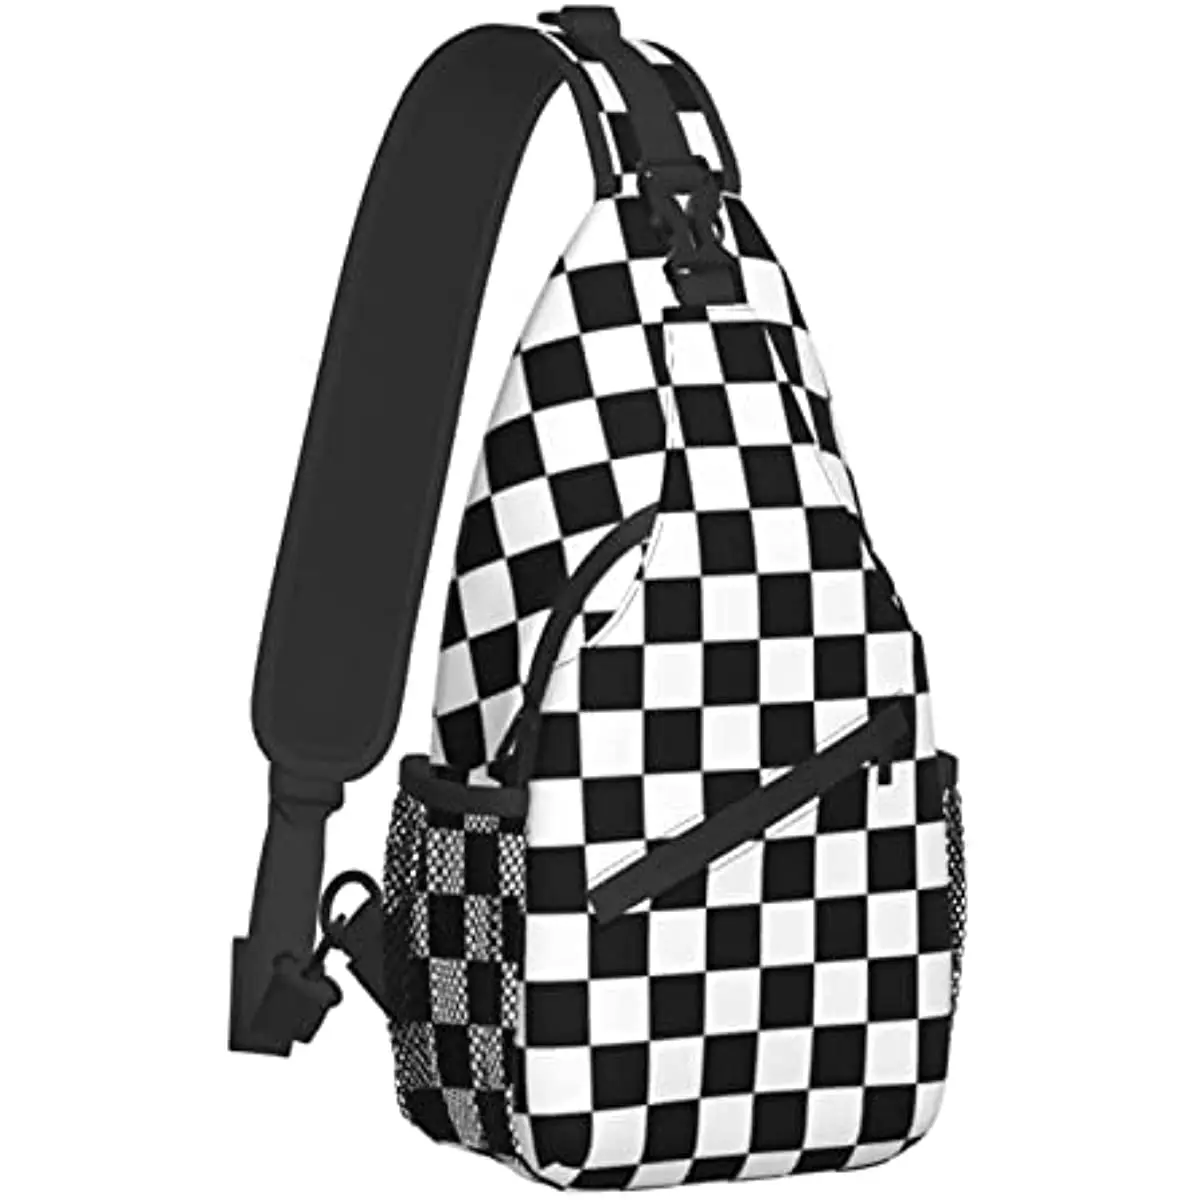 

Black White Checkered Flag Sling Backpack Crossbody Shoulder Bags for Women Men Sling Bag Travel Hiking Chest Bag Daypack Unisex